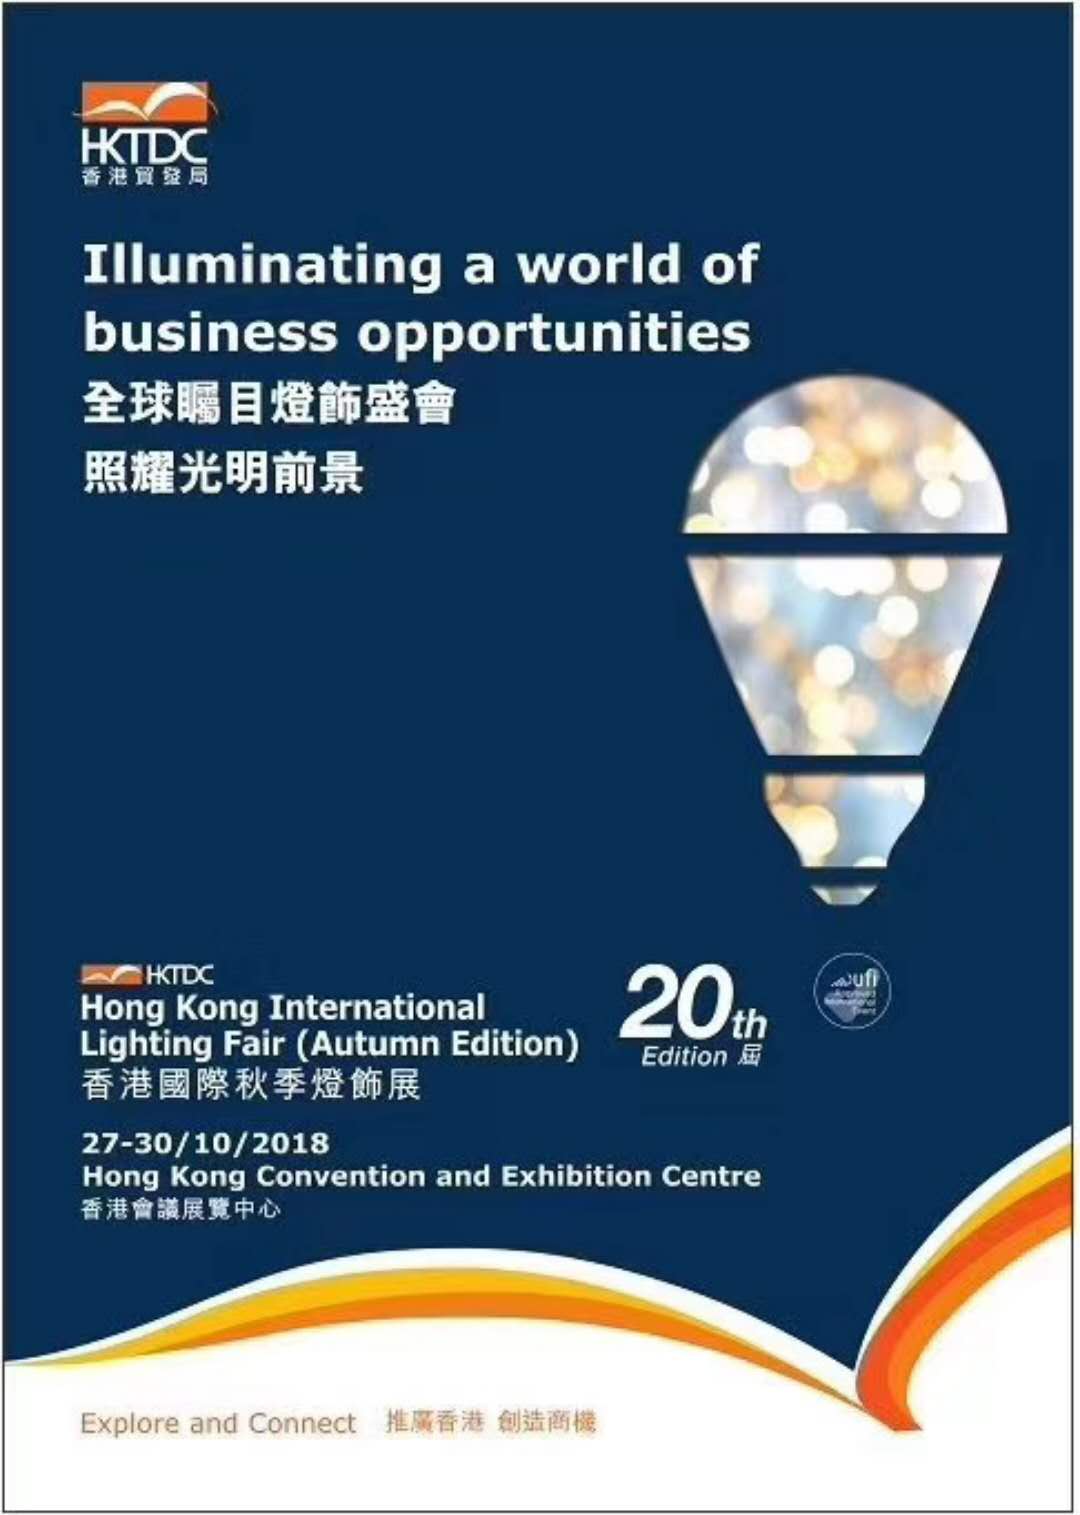 2019年中国香港国际秋季灯饰展览会